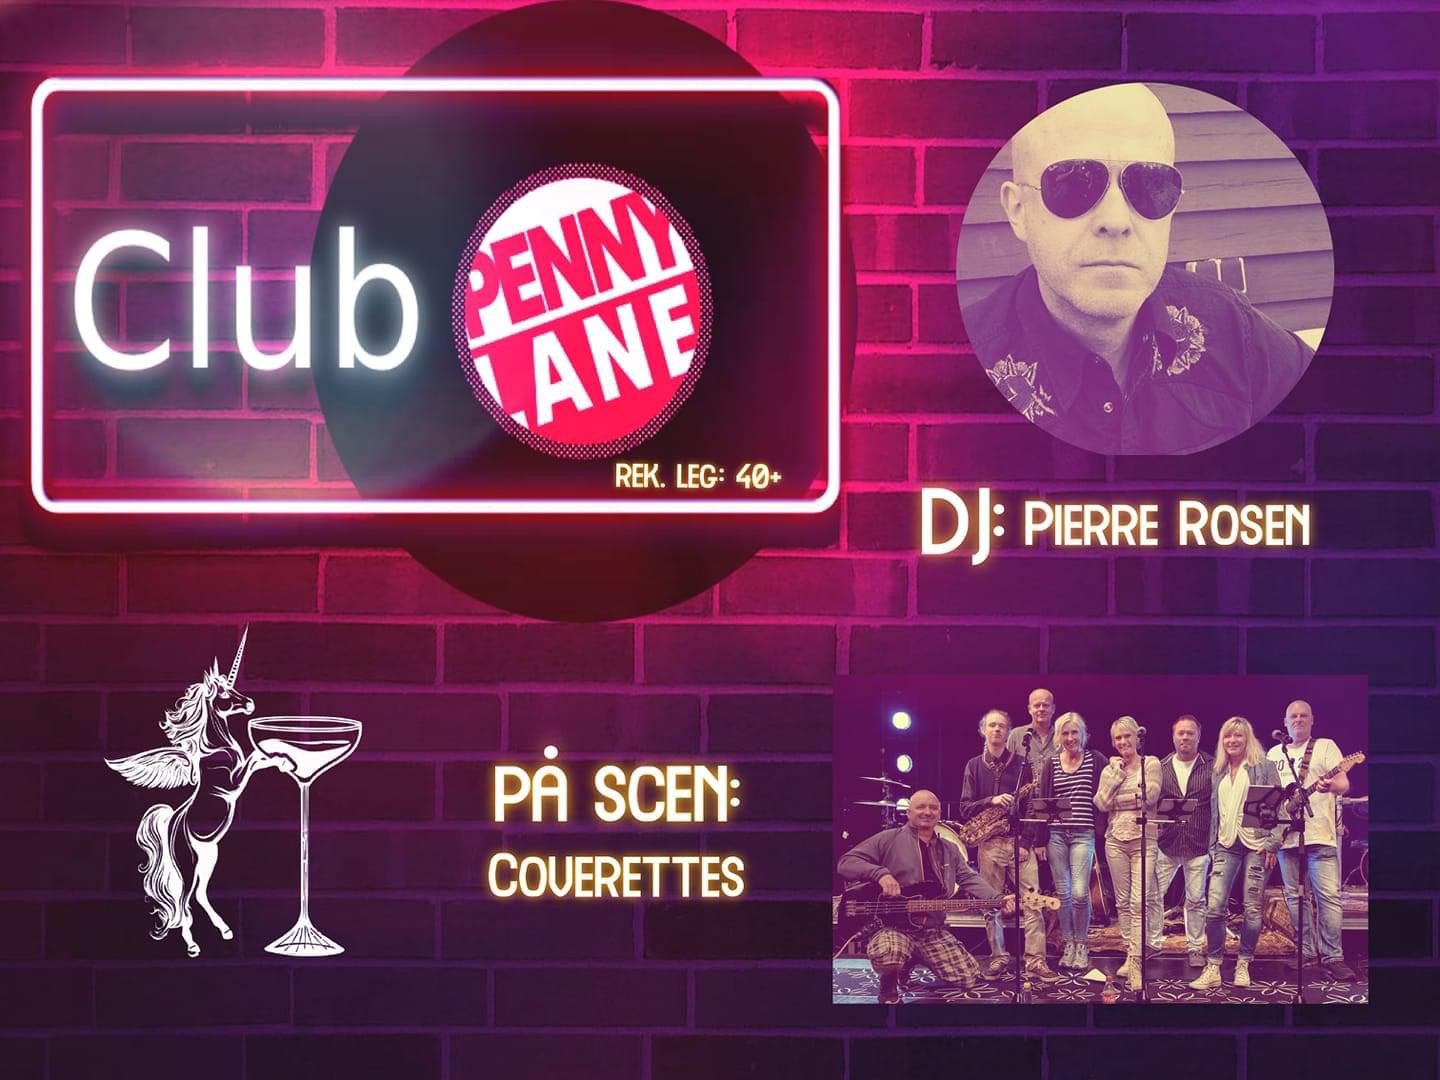 Bildbeskrivning saknas för evenemanget: Club Penny Lane: Coverettes & DJ Pierre Rosen